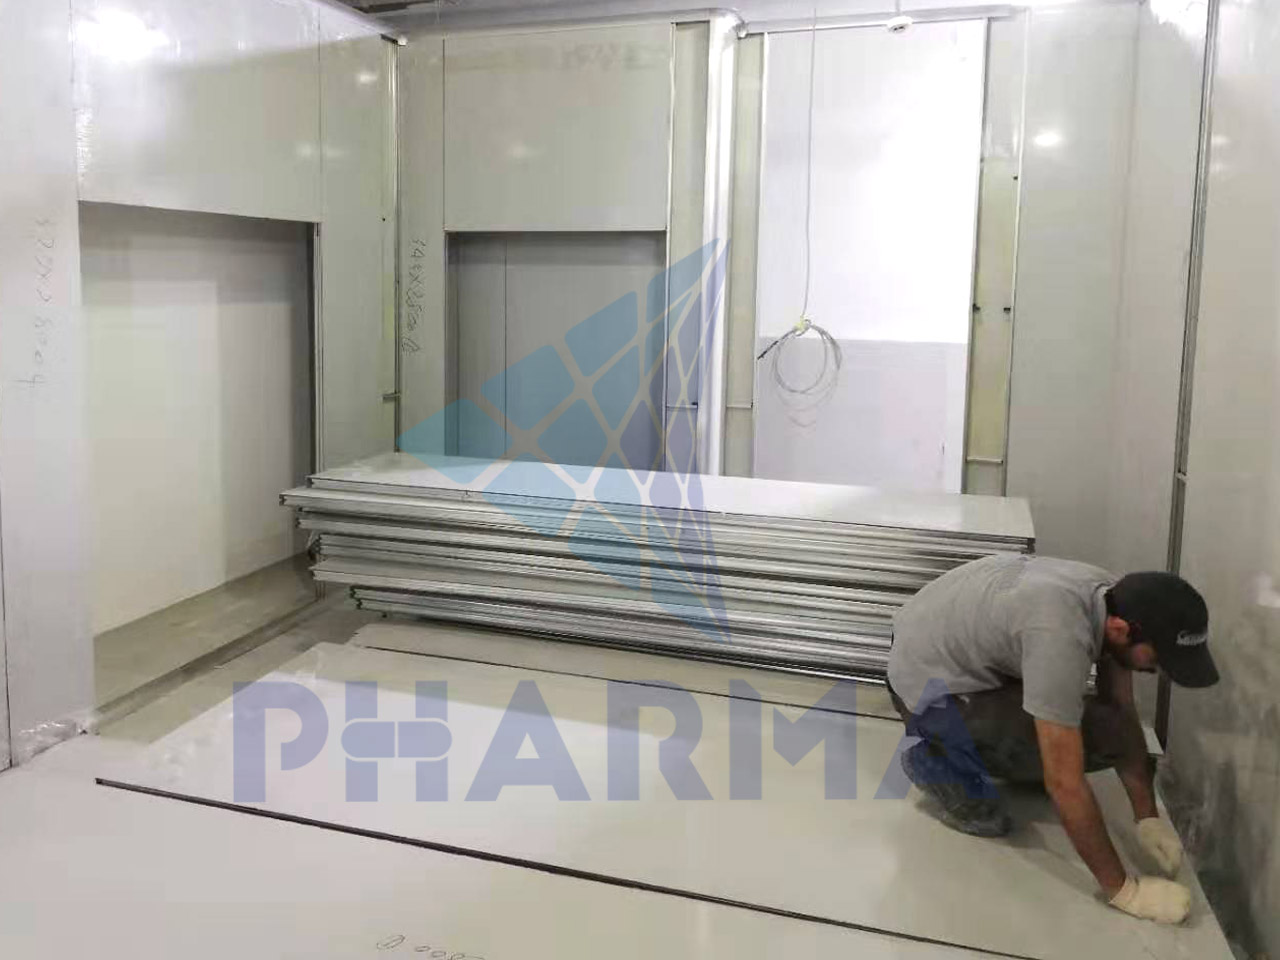 news-PHARMA-Pharmacy Industry Cleanroom in Jordan-img